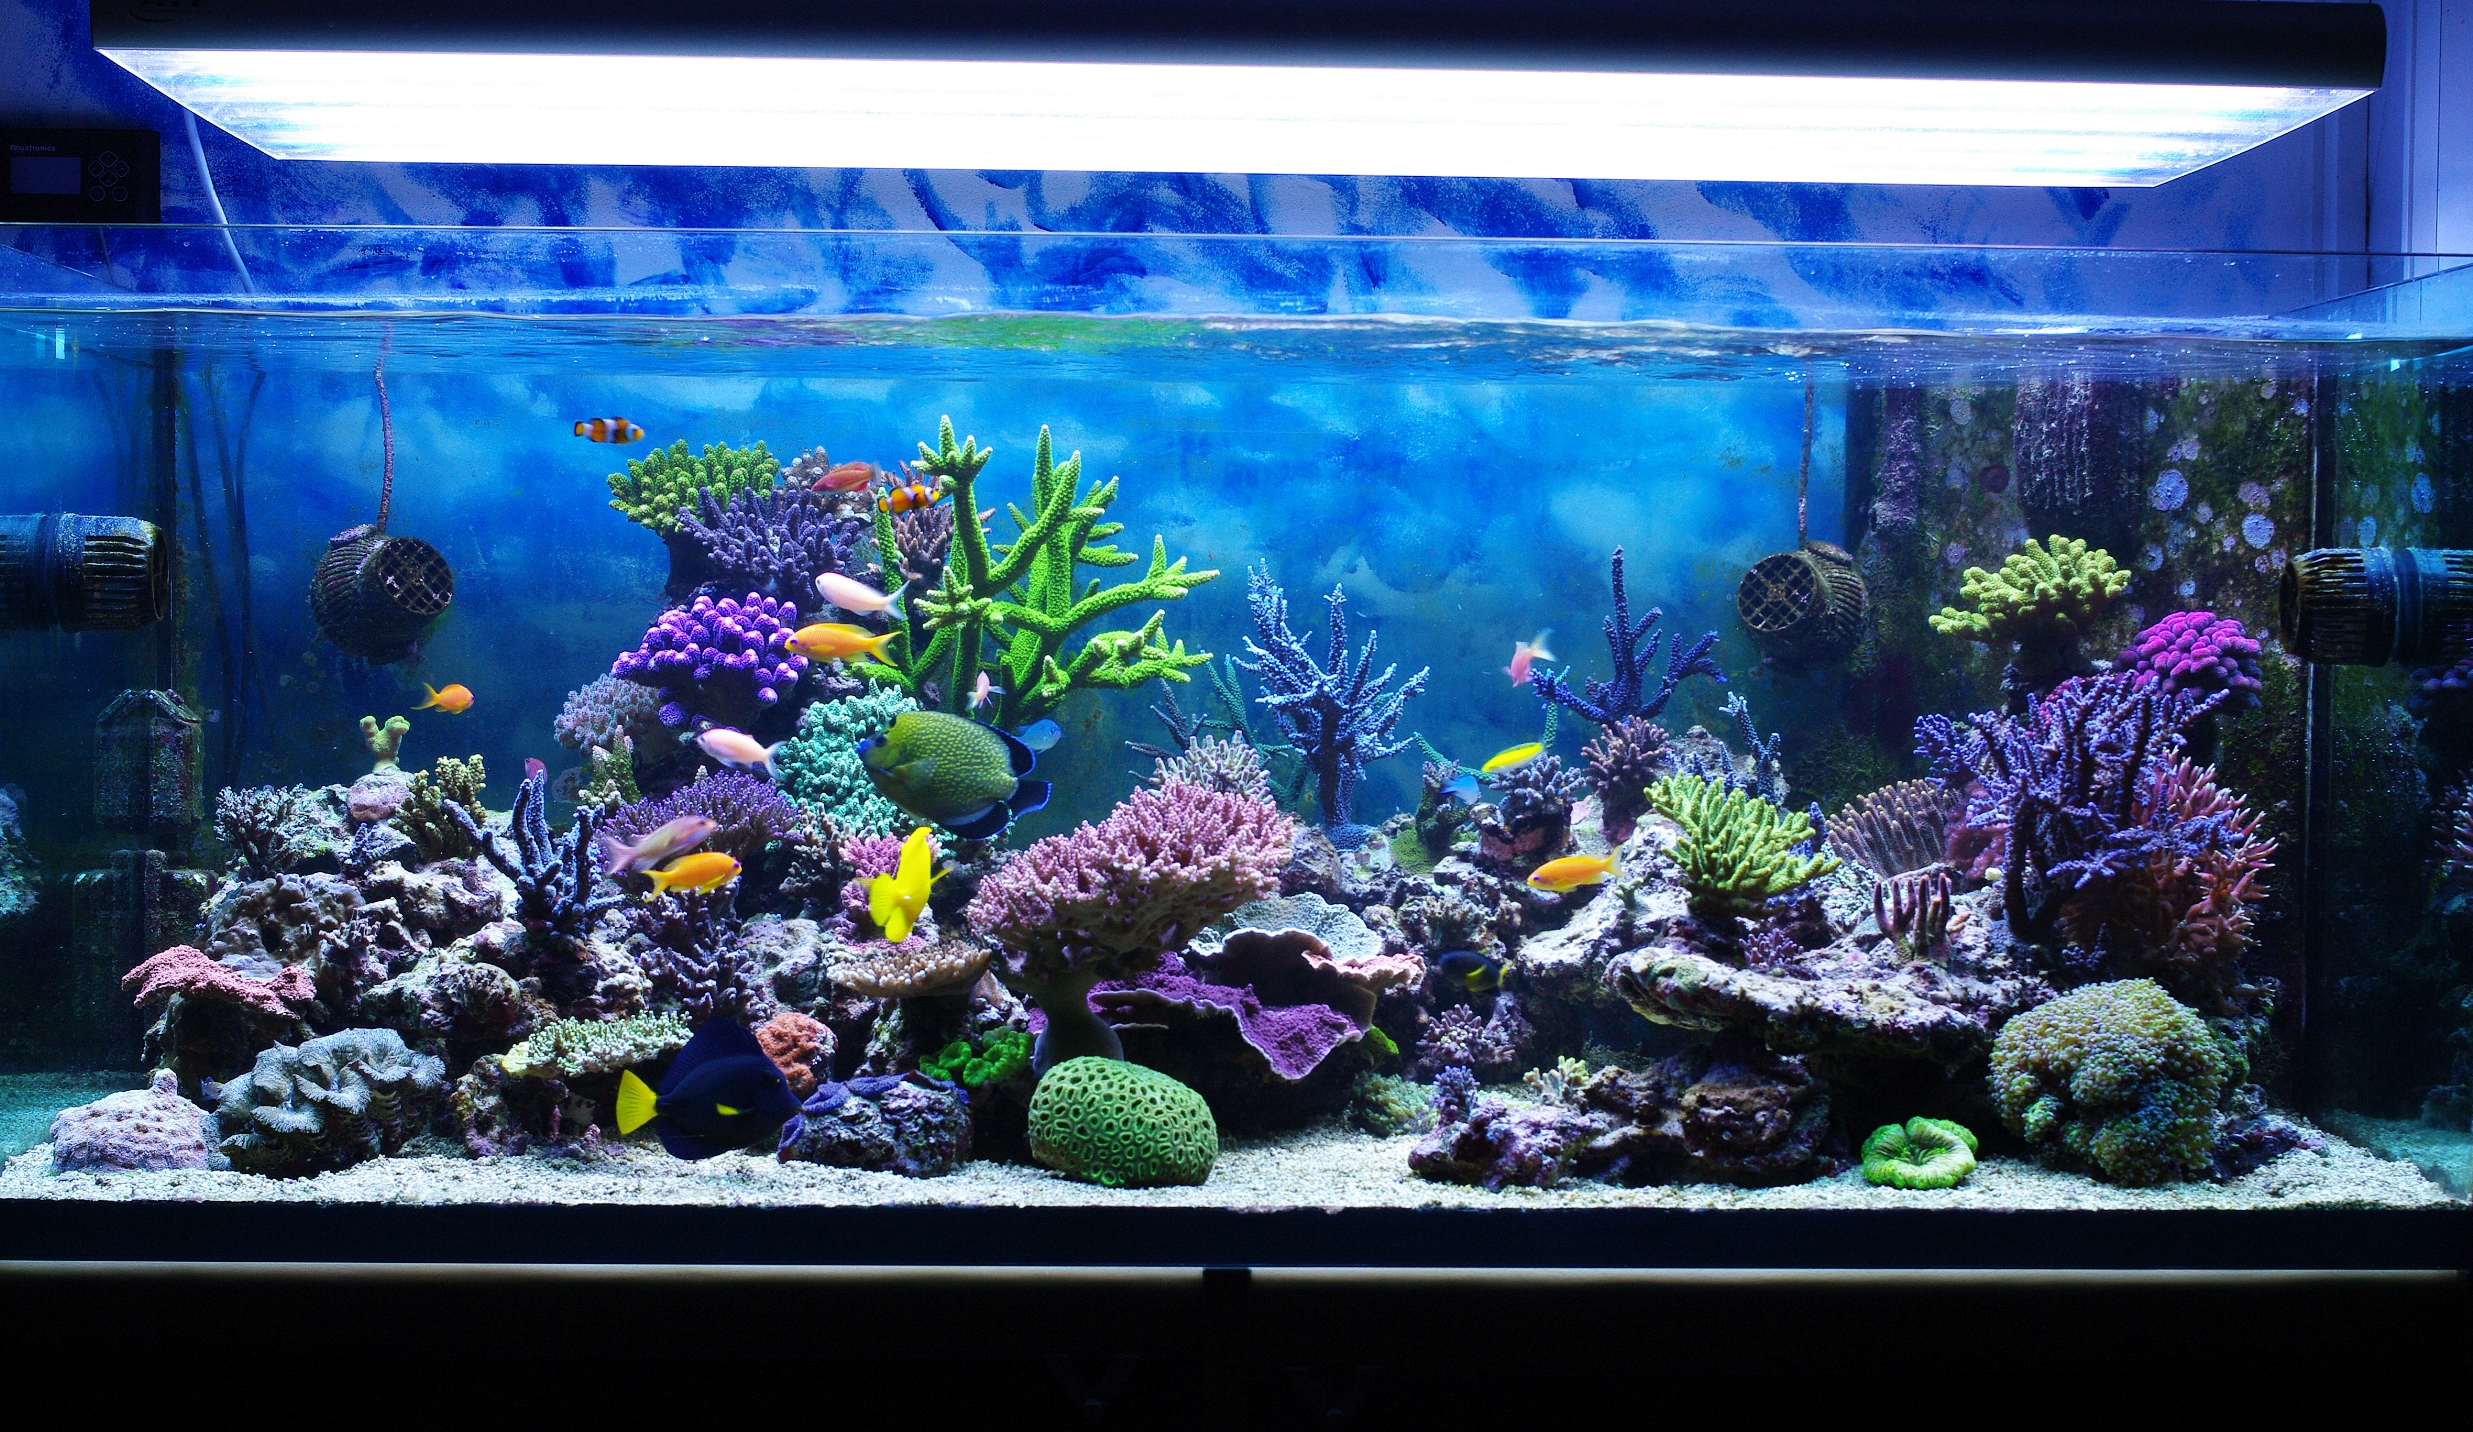 Aquarium corals reef